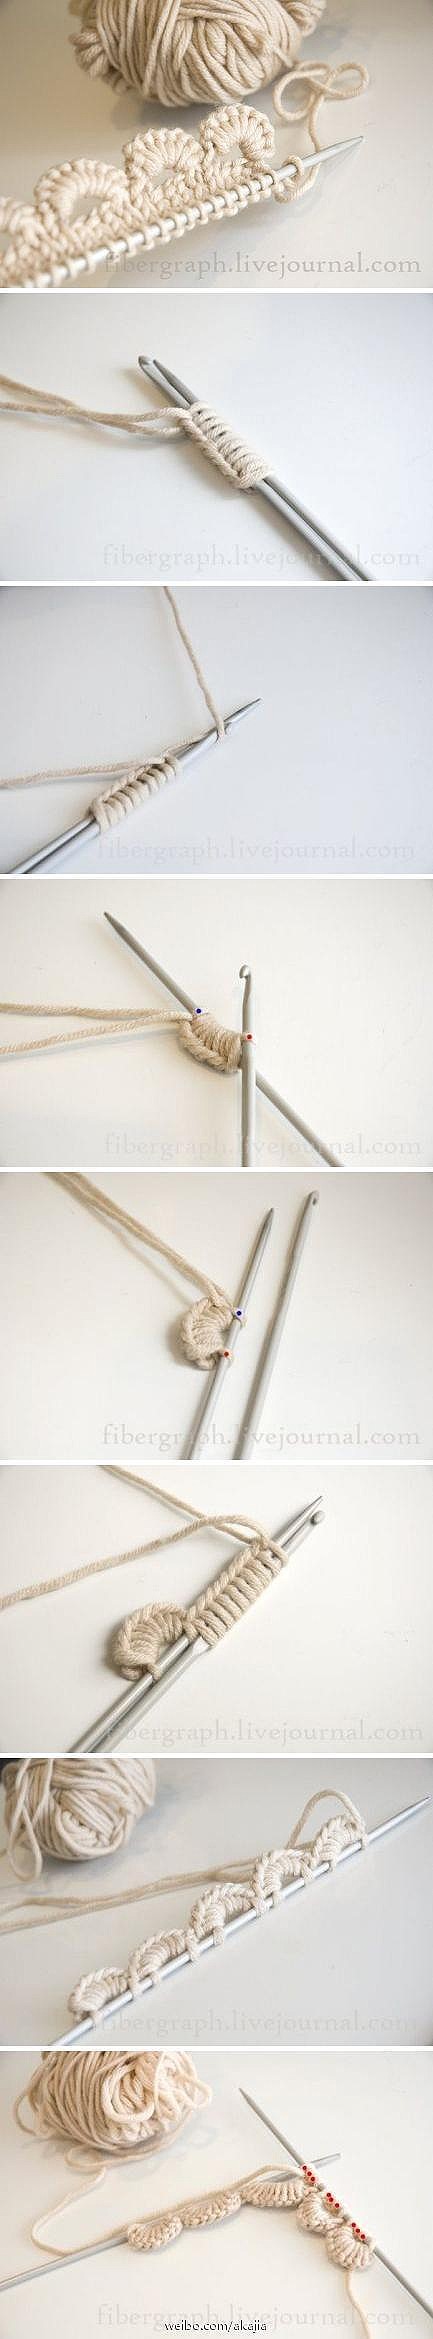 一种花边的织法，挺不错的，可以收藏起来备用。先用2根针，打好结，再把底部那根针抽掉。